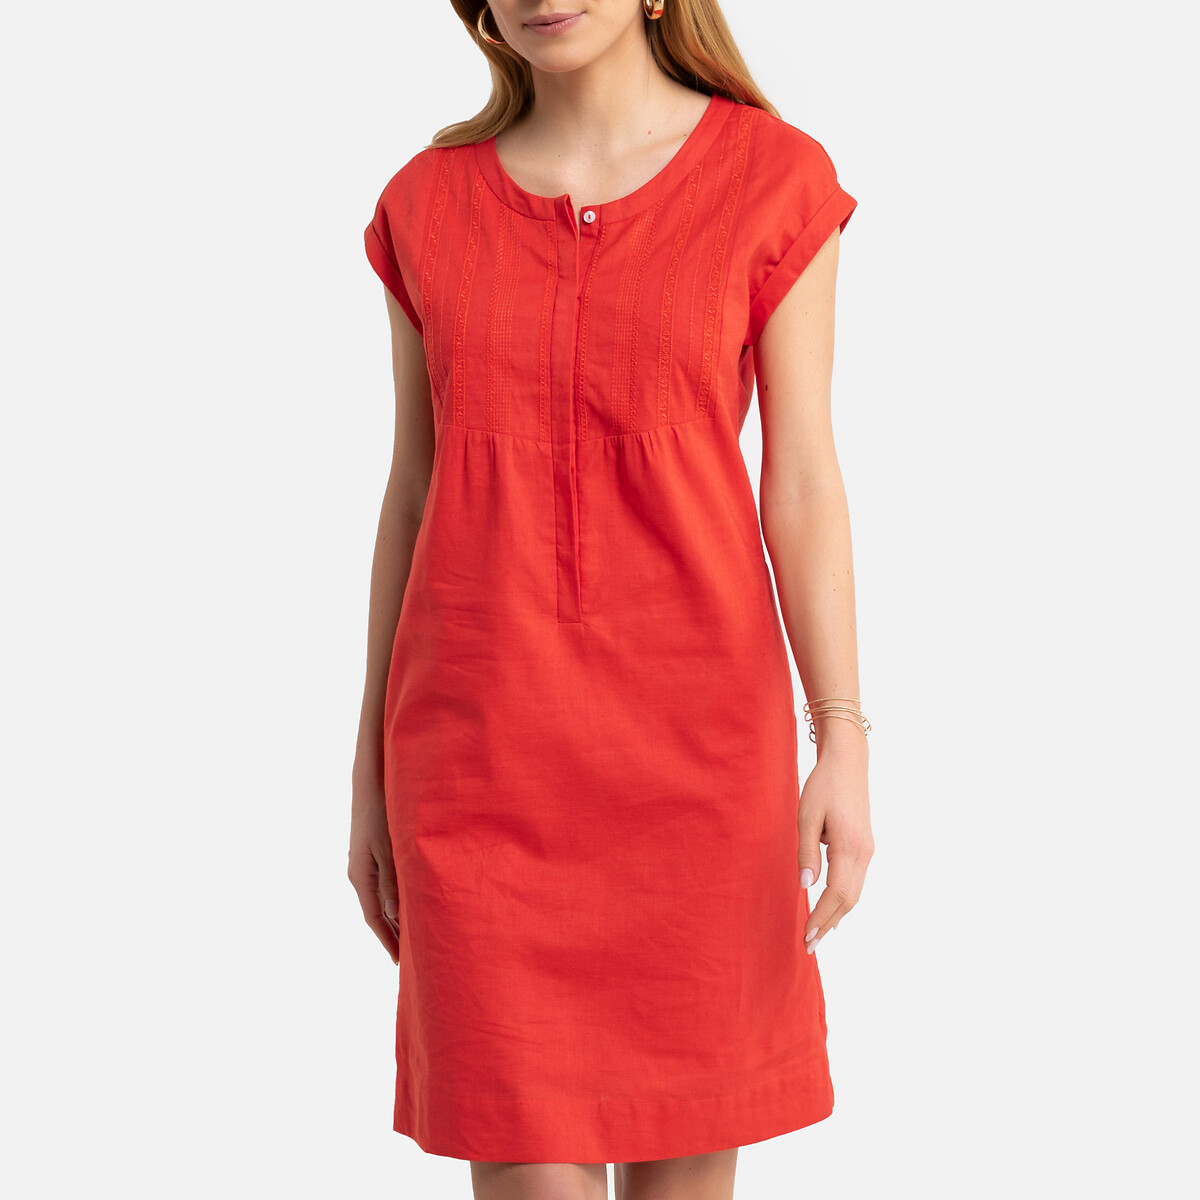 Платье-миди LaRedoute Прямое с короткими рукавами 36 (FR) - 42 (RUS) оранжевый, размер 36 (FR) - 42 (RUS) Прямое с короткими рукавами 36 (FR) - 42 (RUS) оранжевый - фото 1